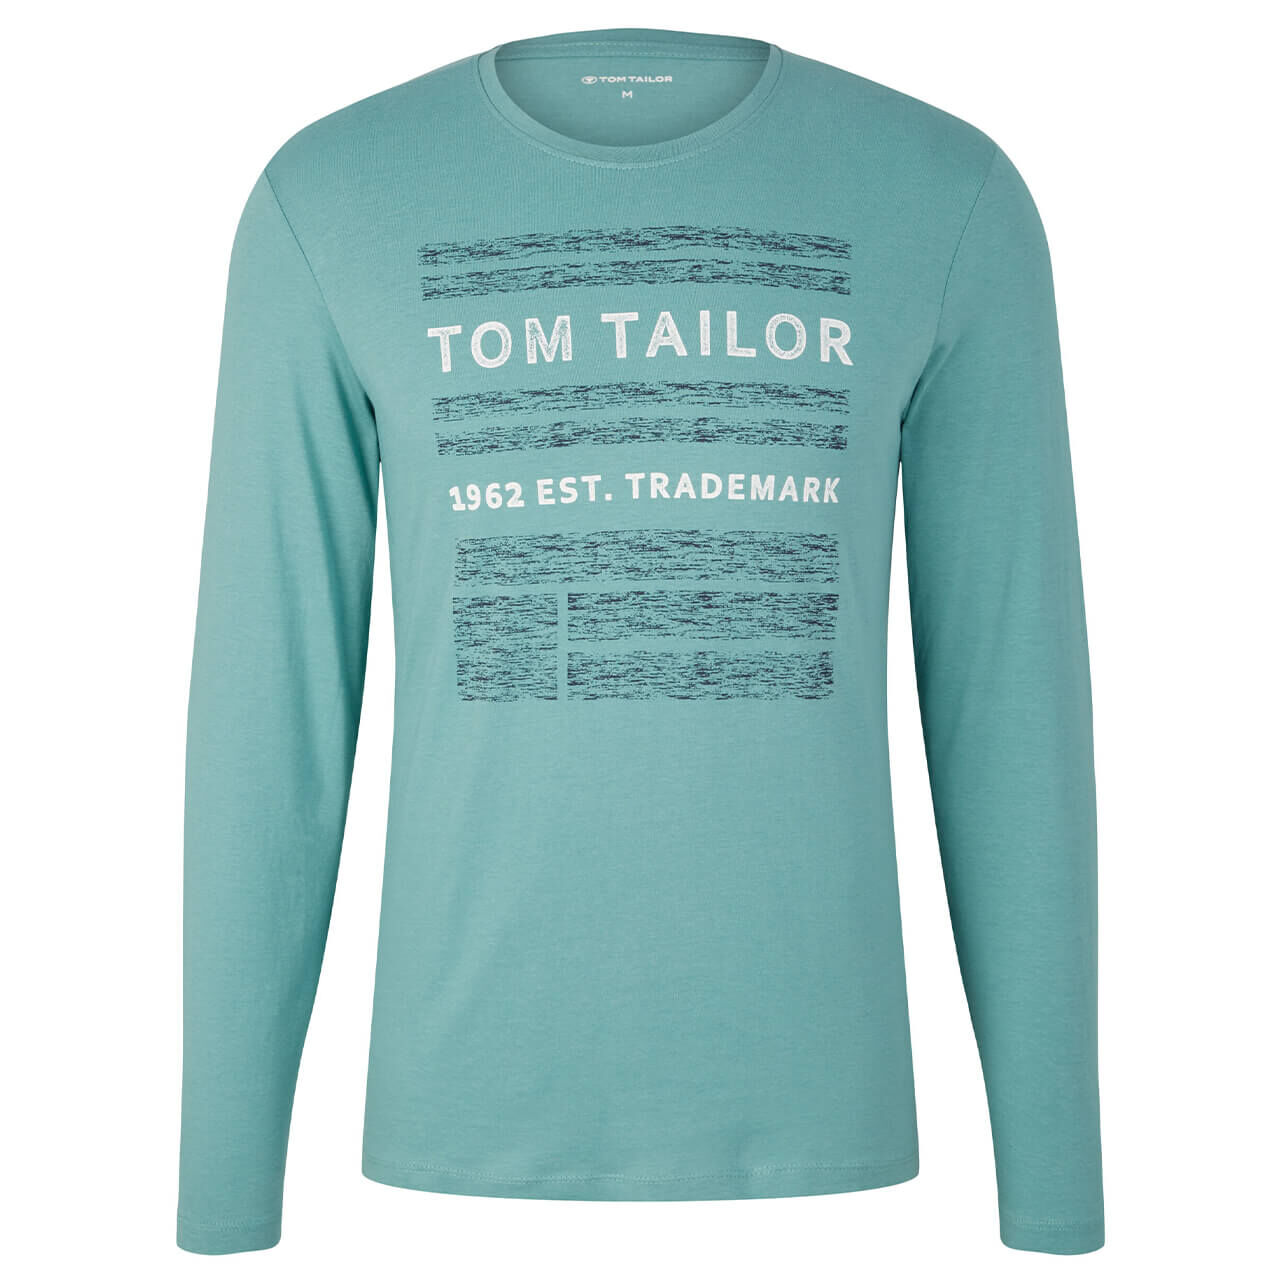 Tom Tailor Herren Langarm Shirt salvia print